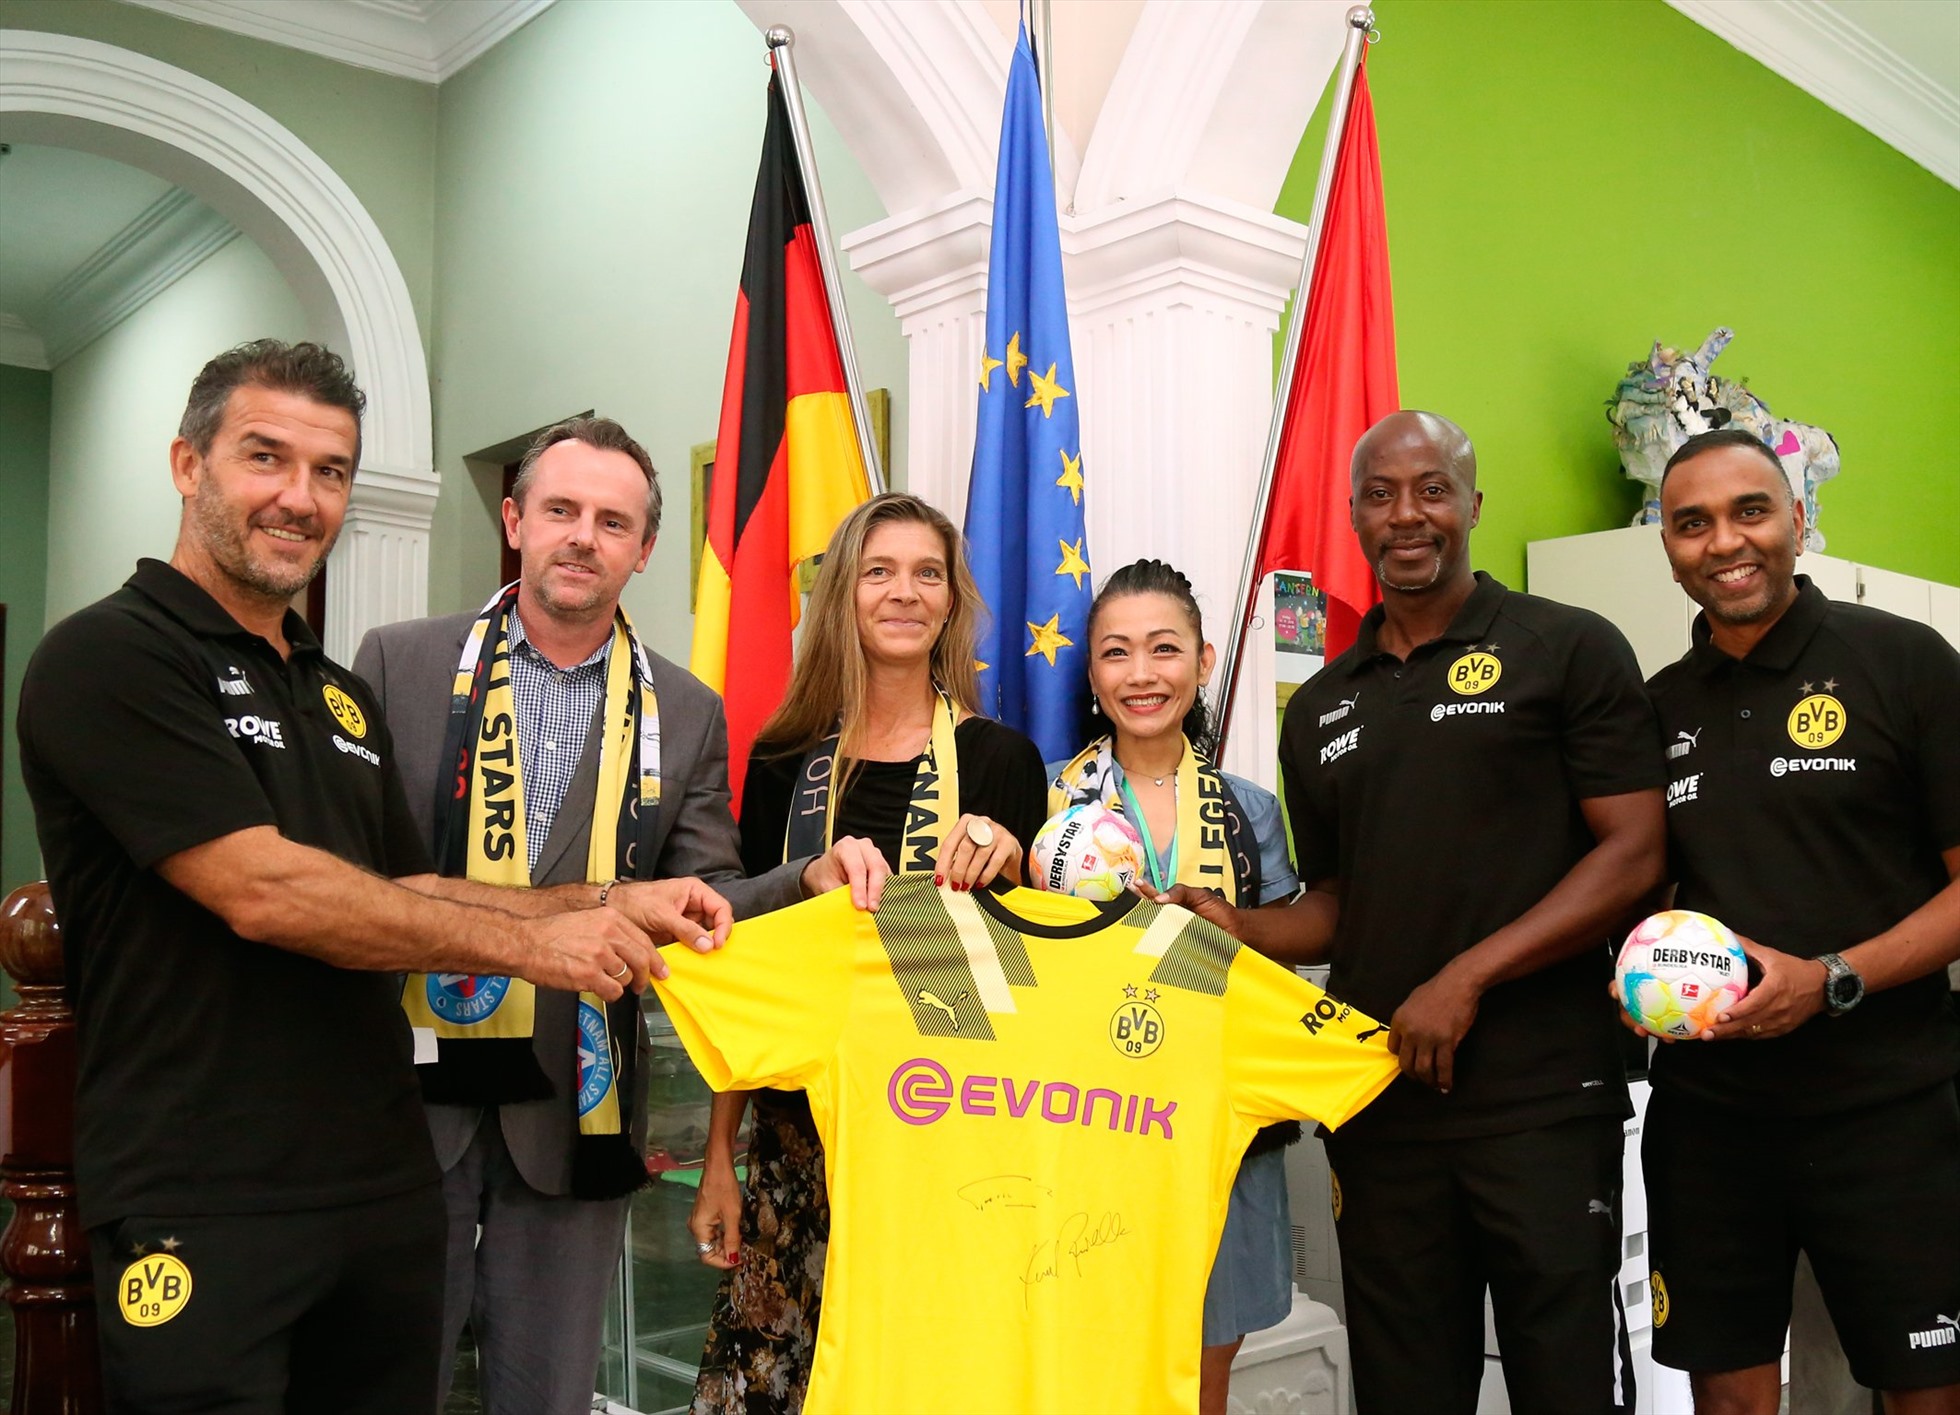 Các cựu danh thủ Dortmund tặng áo kỷ niệm cho Hiệu trưởng nhà trường - ông Tibor Stettin (thứ 2 từ trái qua). Ảnh: T.V